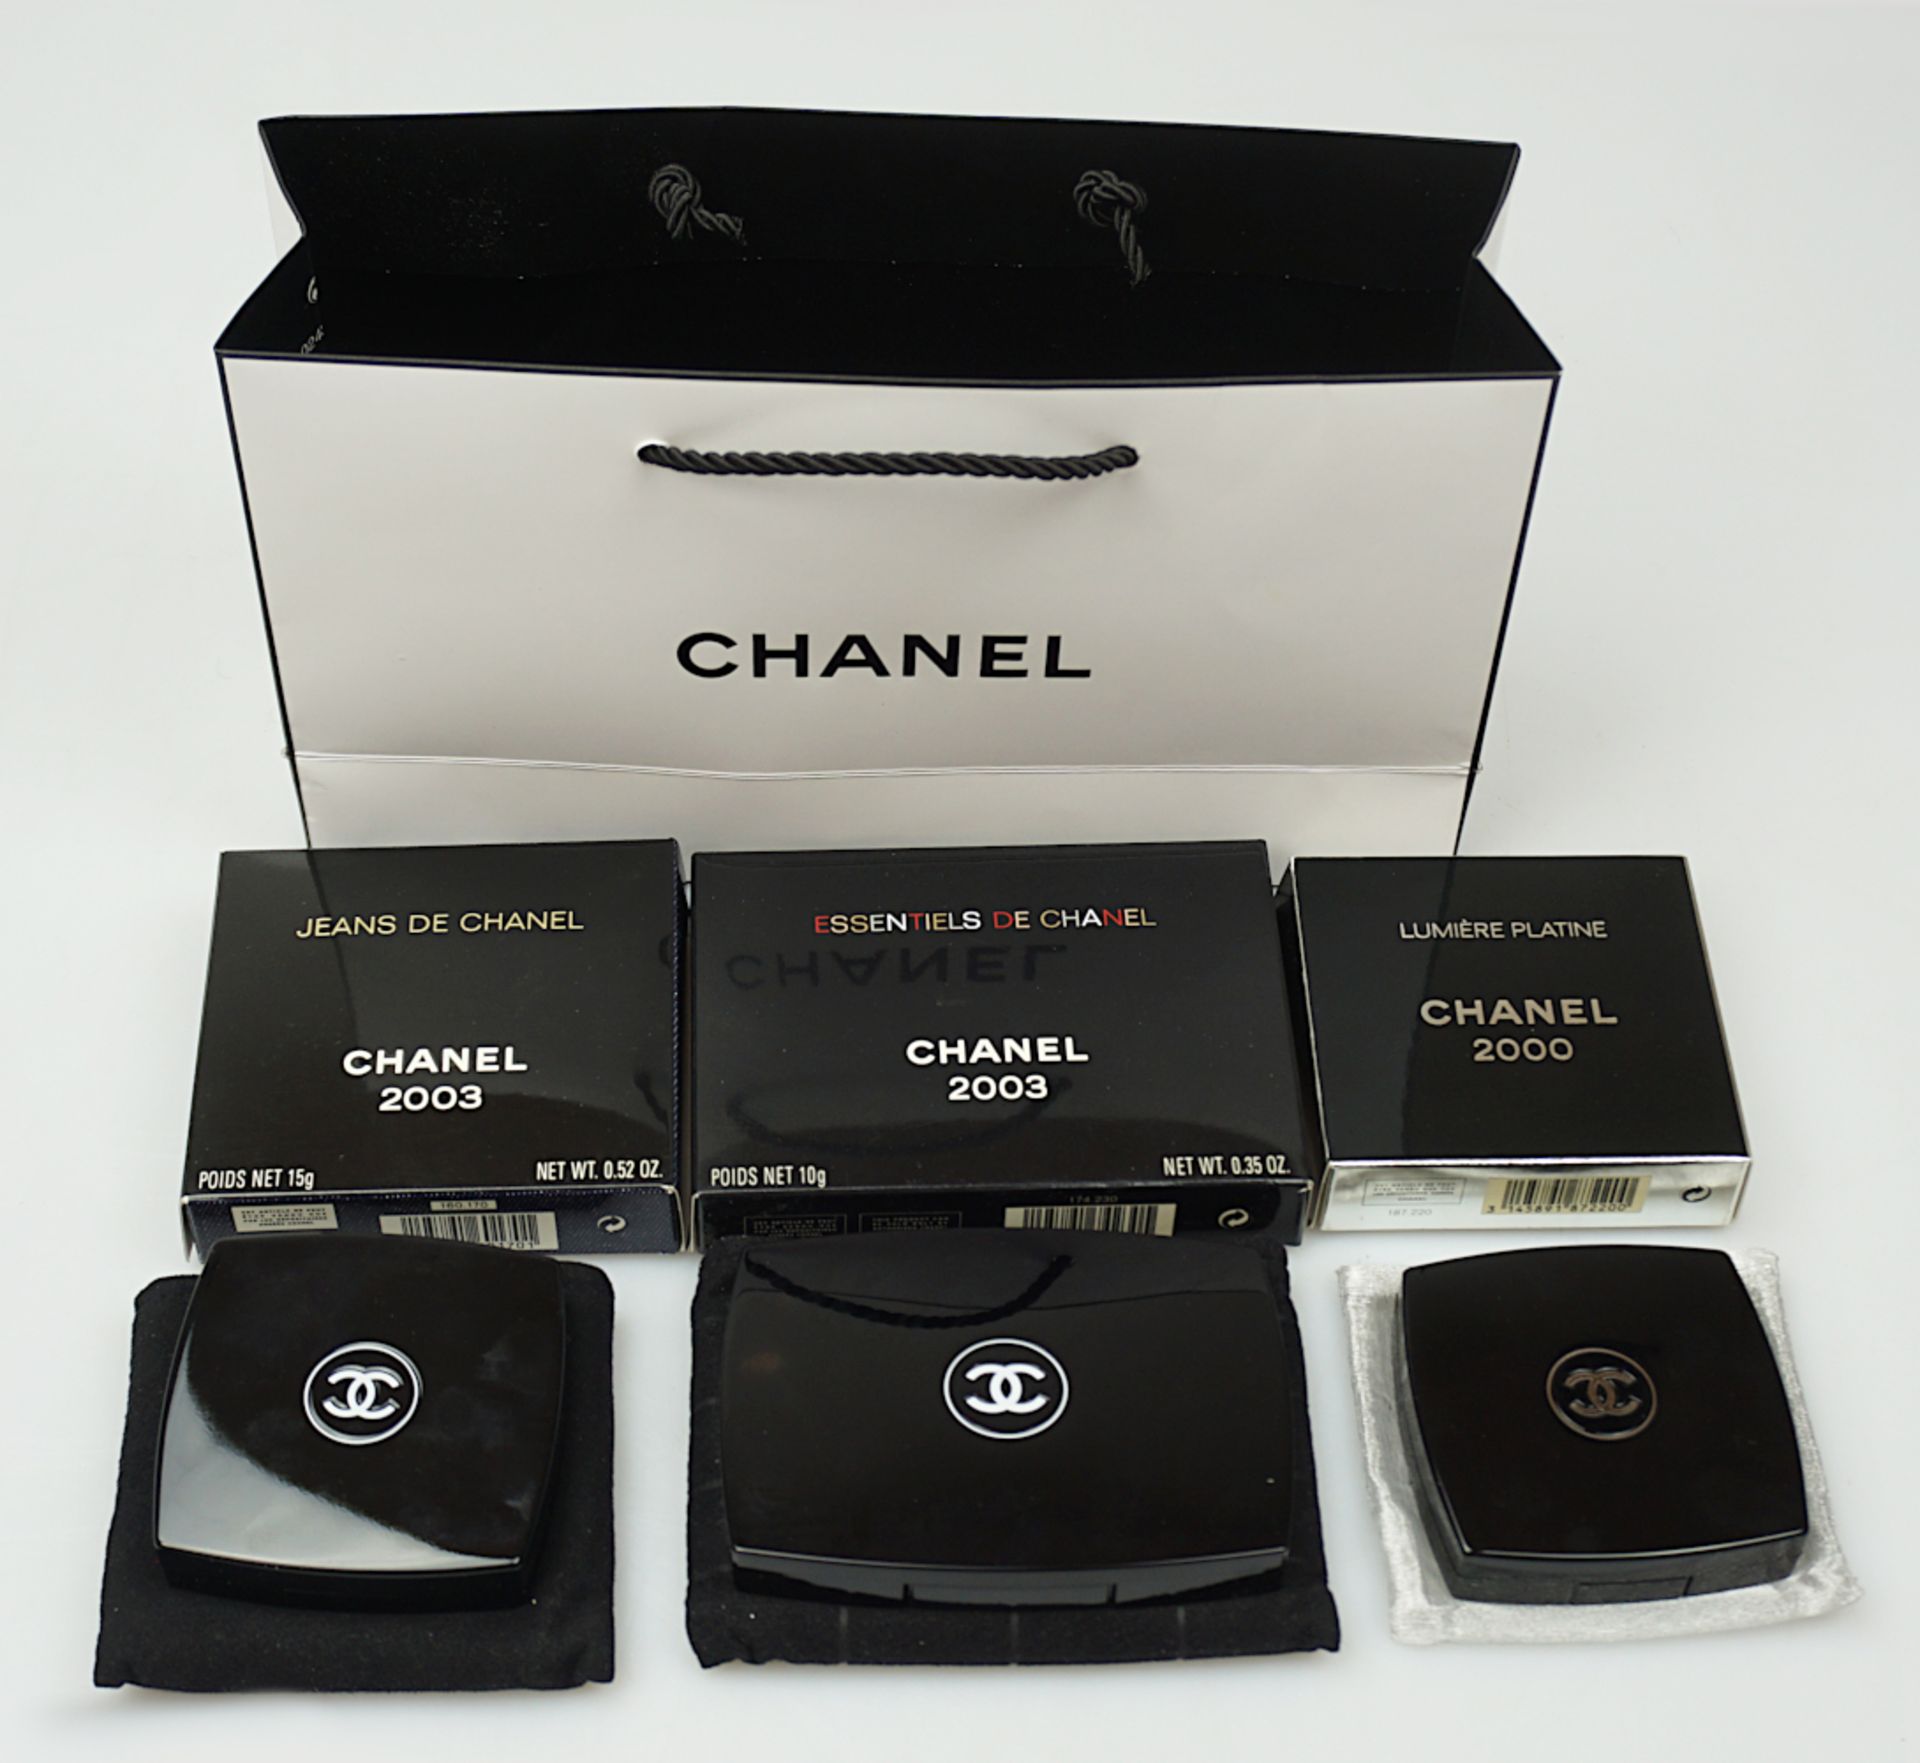 3 Kosmetiksets CHANEL (3x unbenutzt) 2000/ 2003 Sondereditionen wie z.B. Jeans de Chanel in der Chan